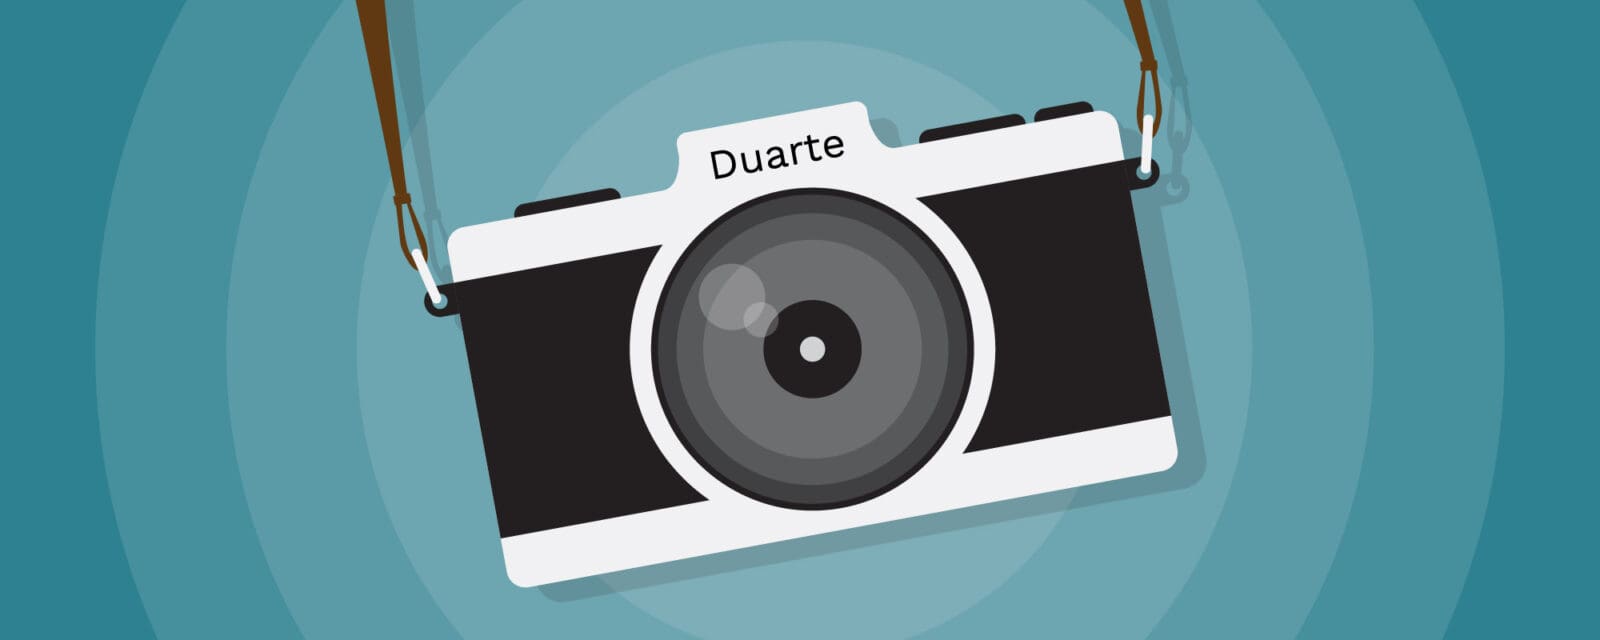 Film camera with "Duarte" engraved above the camera lens